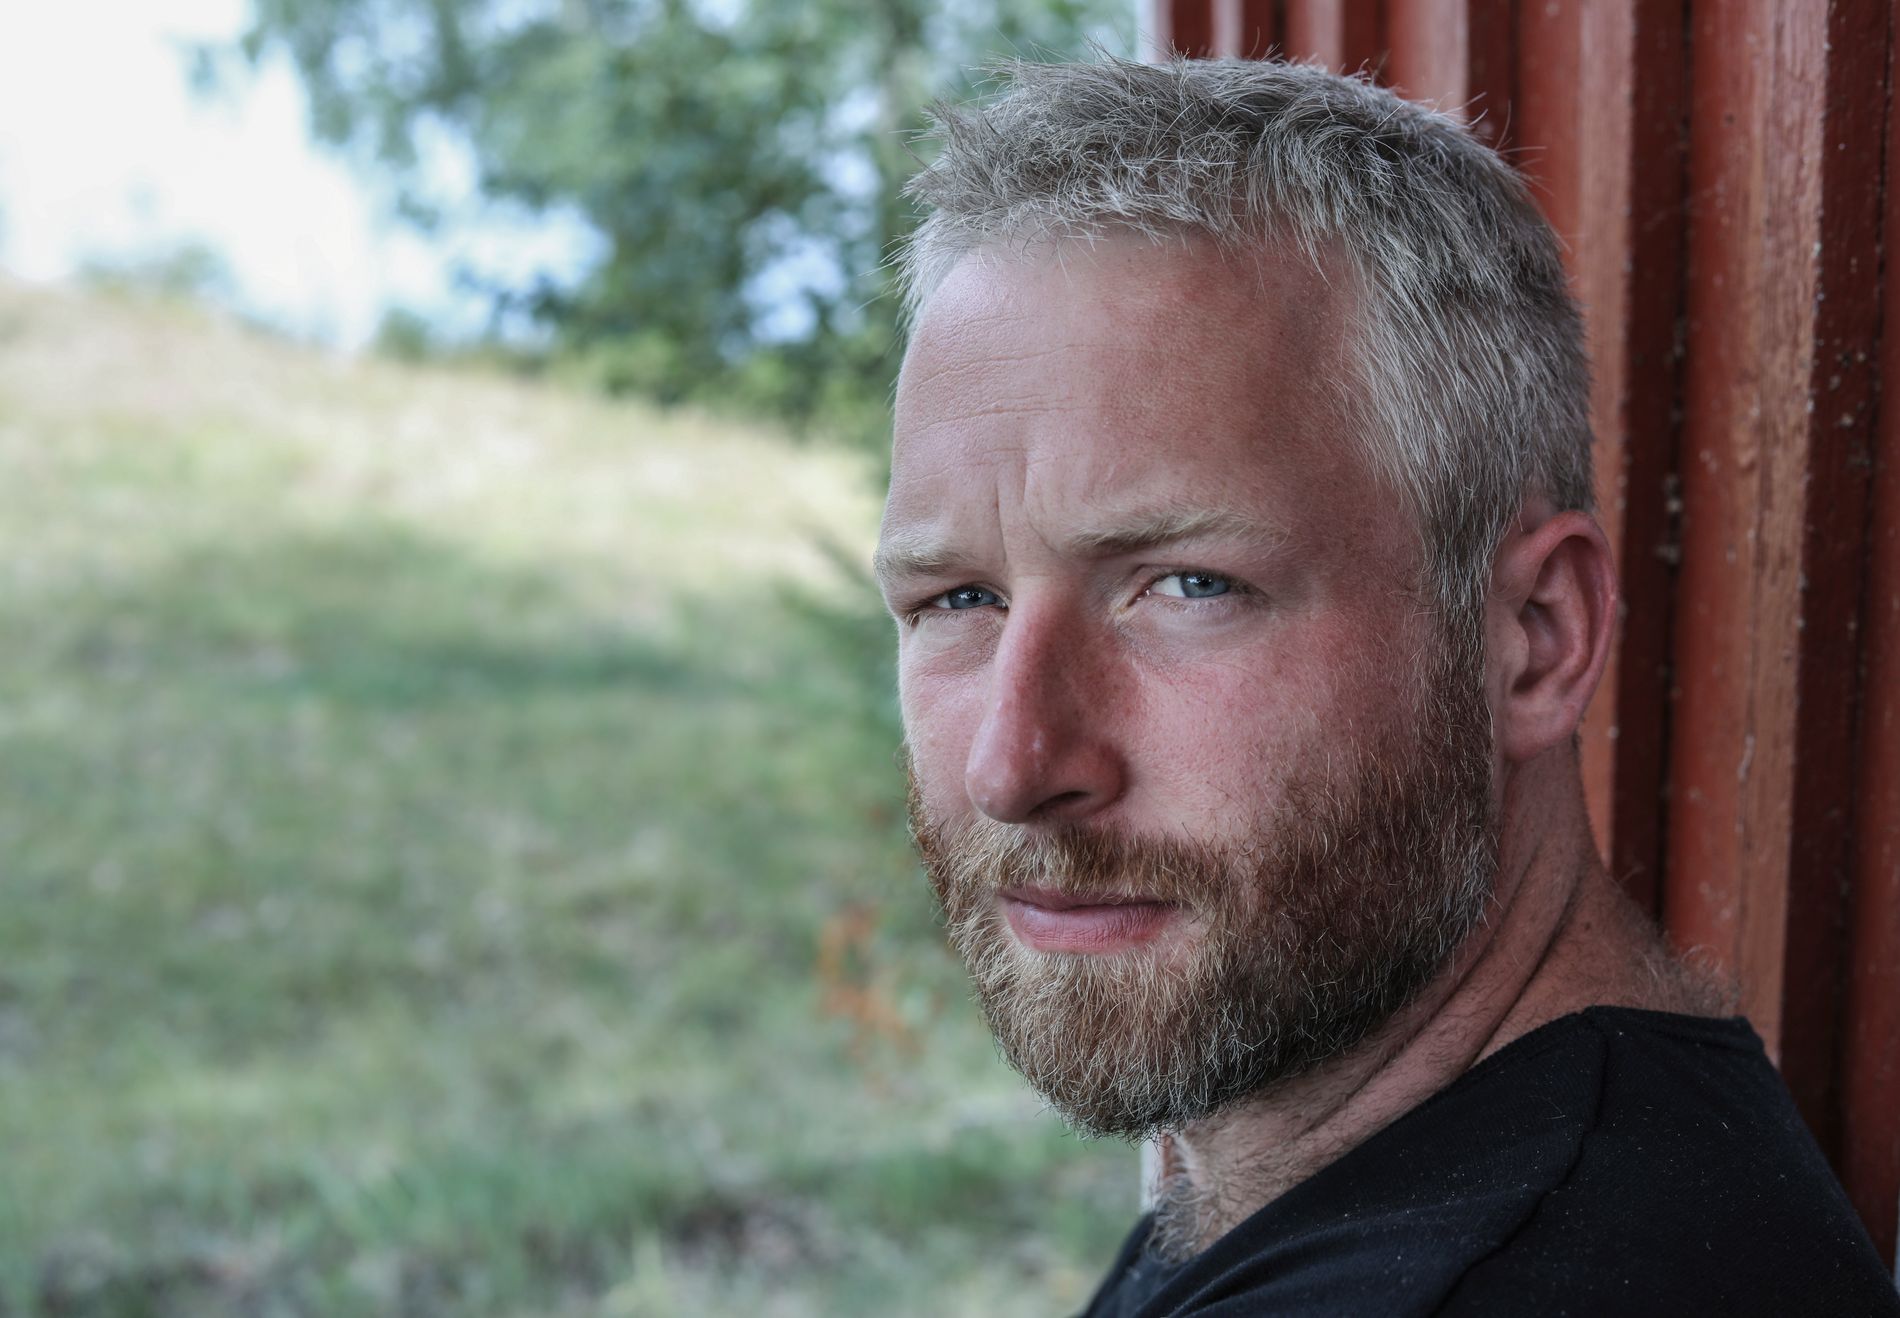   TV KLAAR: Andreas Nørstrud was in 2012 in "Farmen". Nu zal hij gevolgd worden door televisiecamera's op een boerderij - opnieuw.  